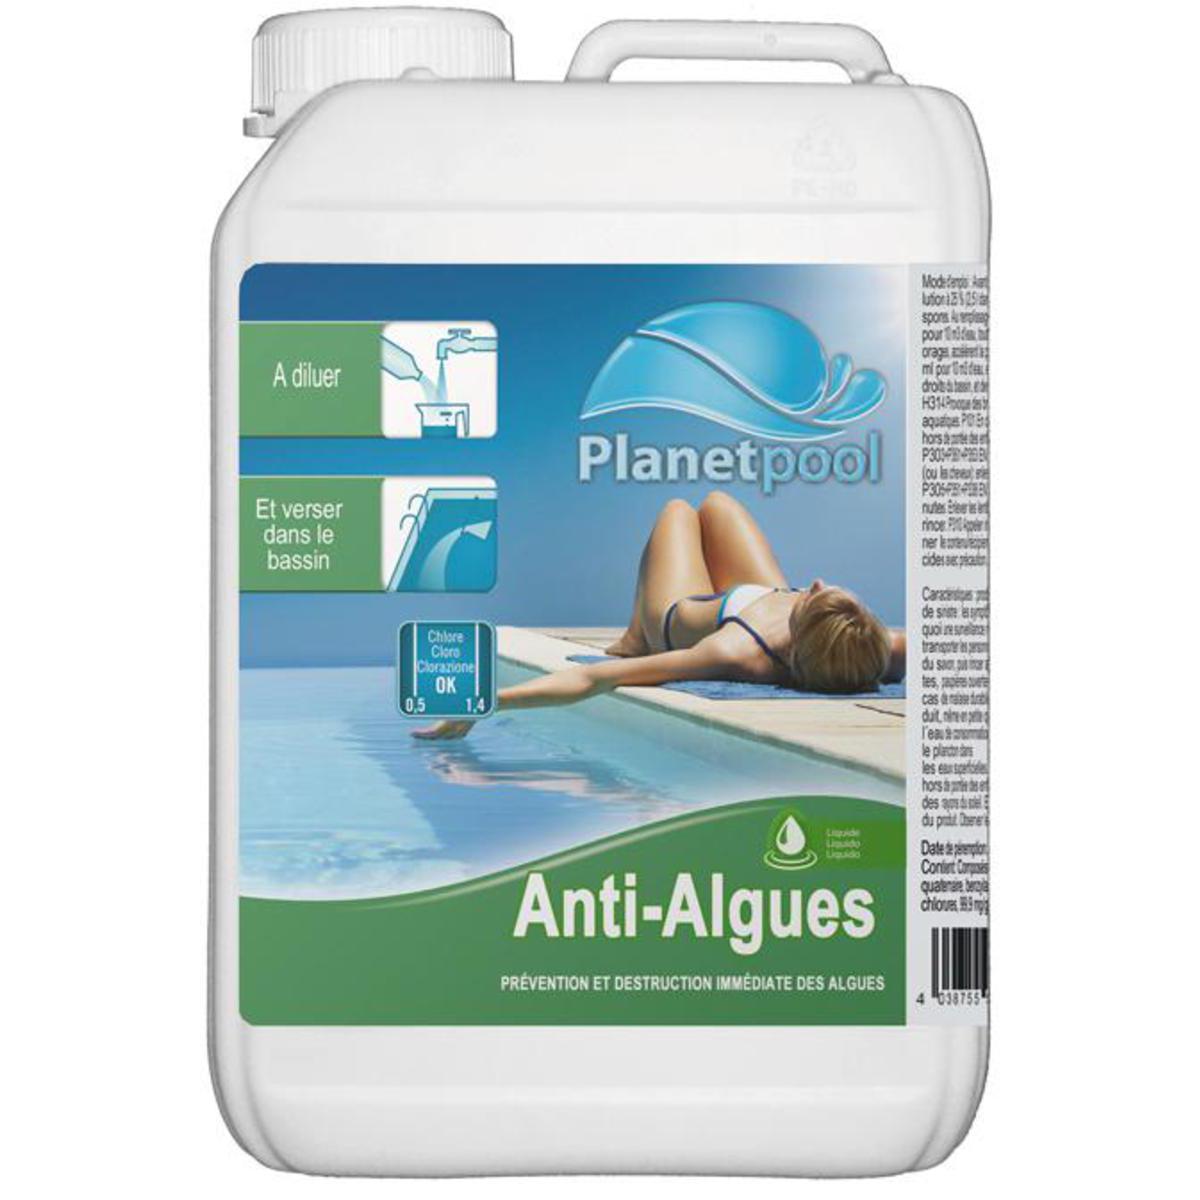 Anti-algue concentré - 18 x 12 x H 29 cm - blanc